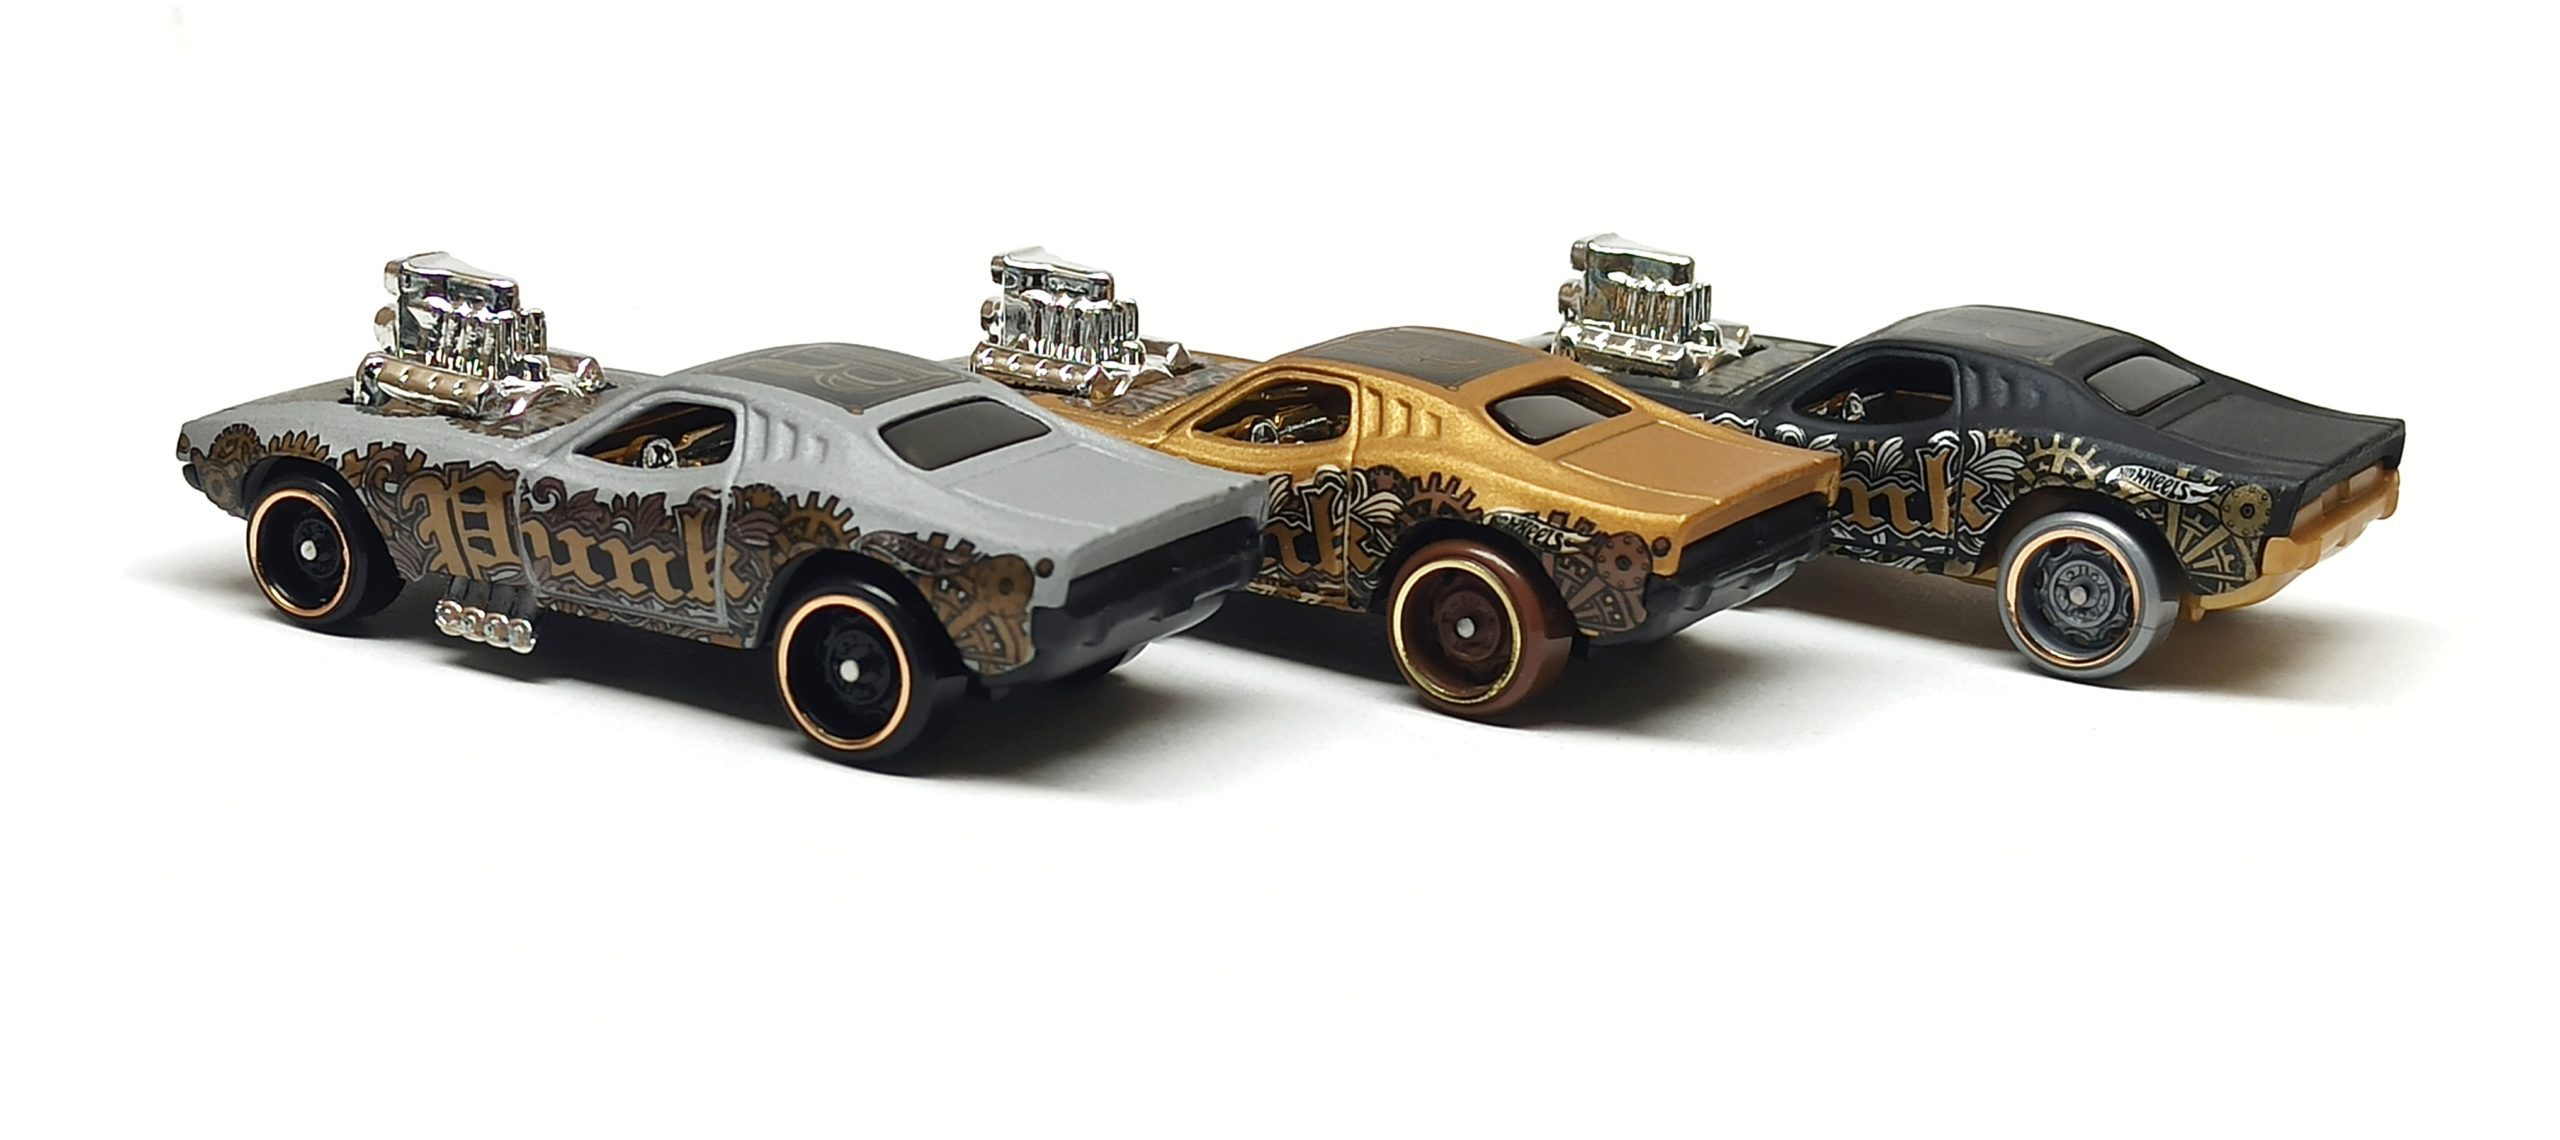 Hot Wheels Rodger Dodger (GHC20 + GHG60 +  GHD92) 2020 (67/250) HW Art Cars (8/10) matte black + gold (Kroger Exclusive) + grey